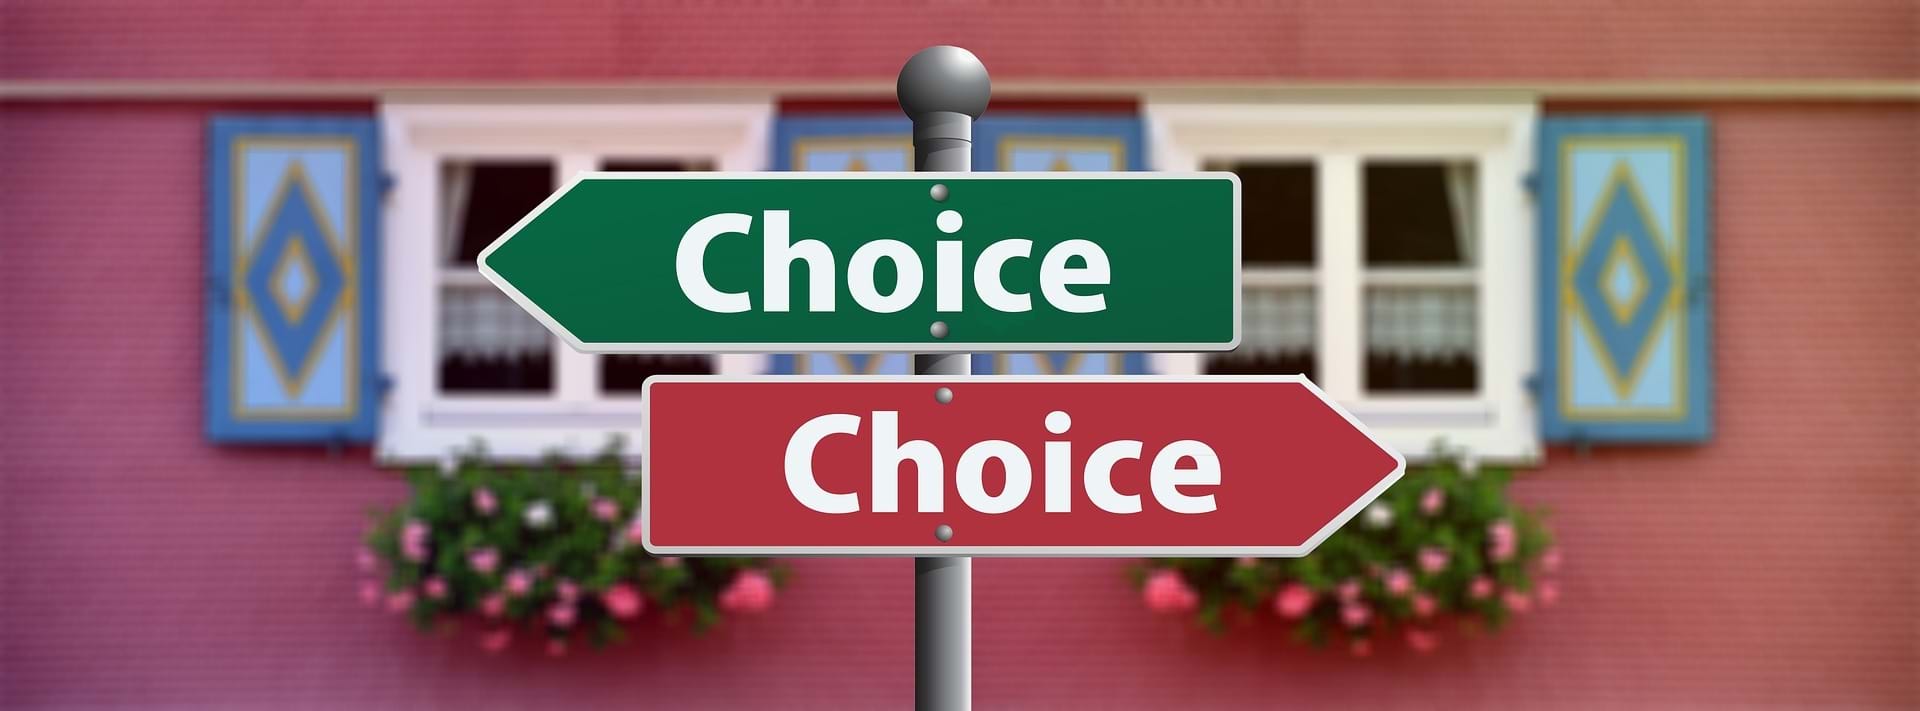 Et vejskilt hvor der på engelsk står Choice og en pil der peger i hver sin retning.